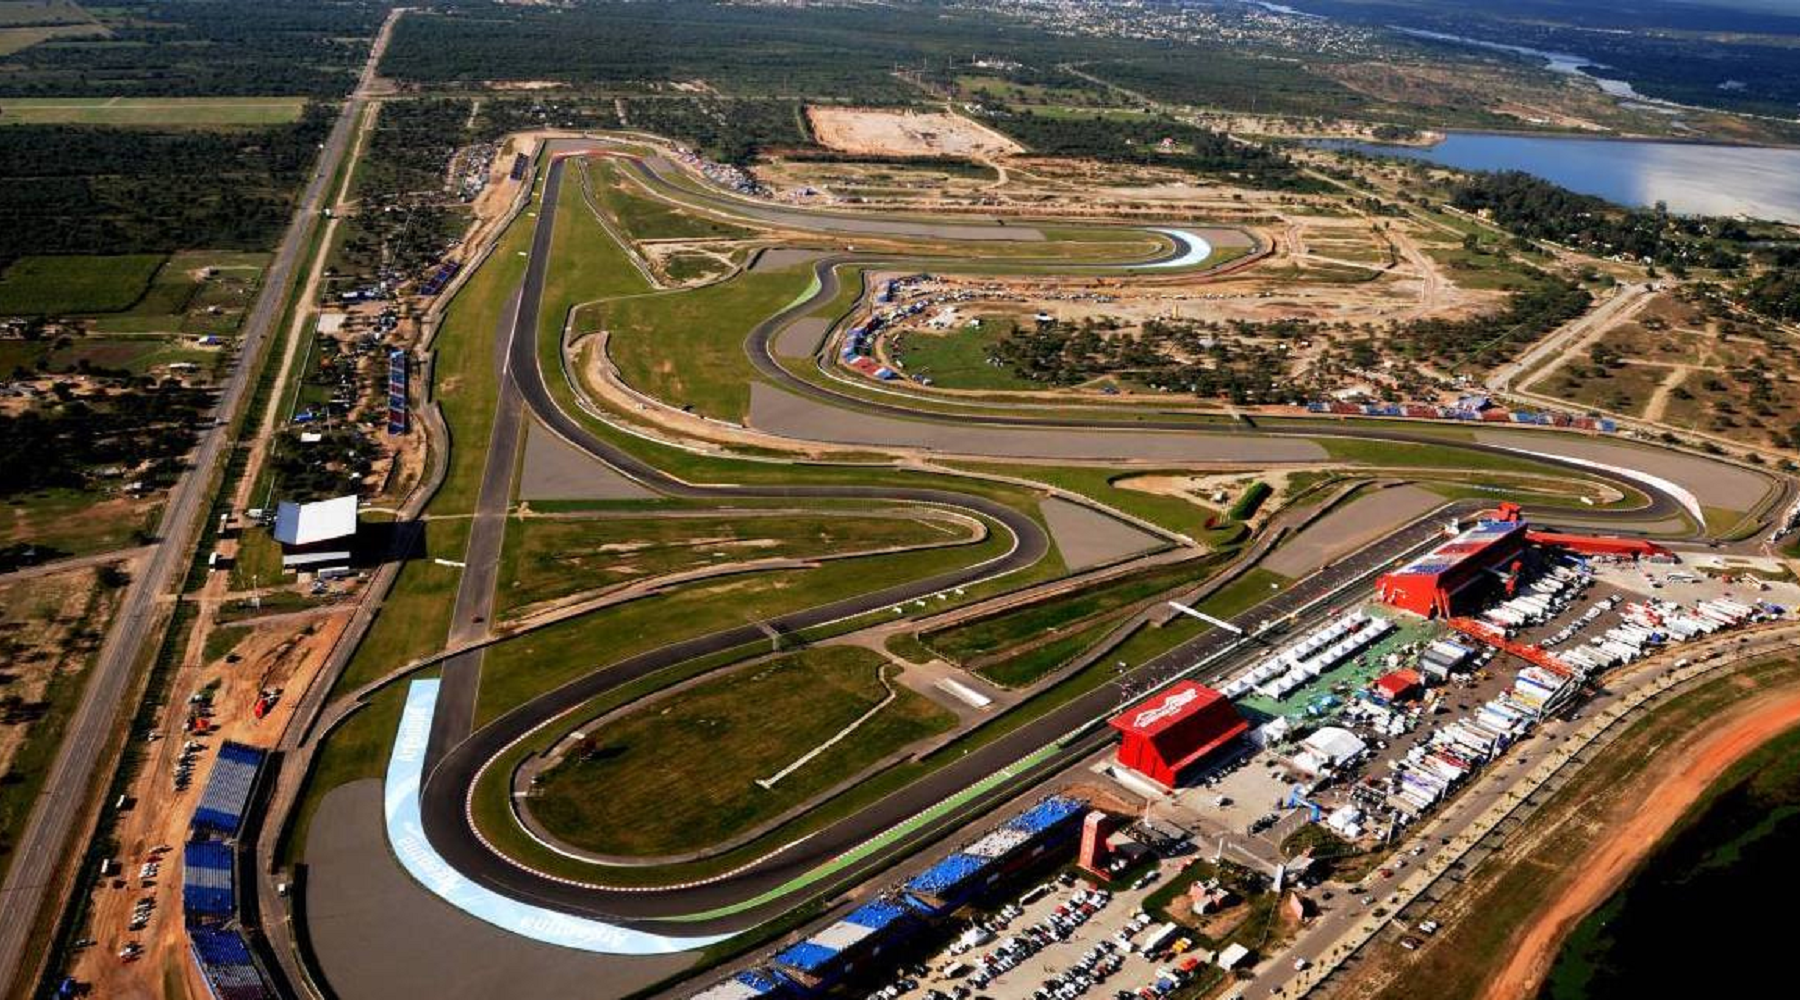 Moto GP: La prueba de Termas de Río Hondo se llevará a cabo en abril de 2021